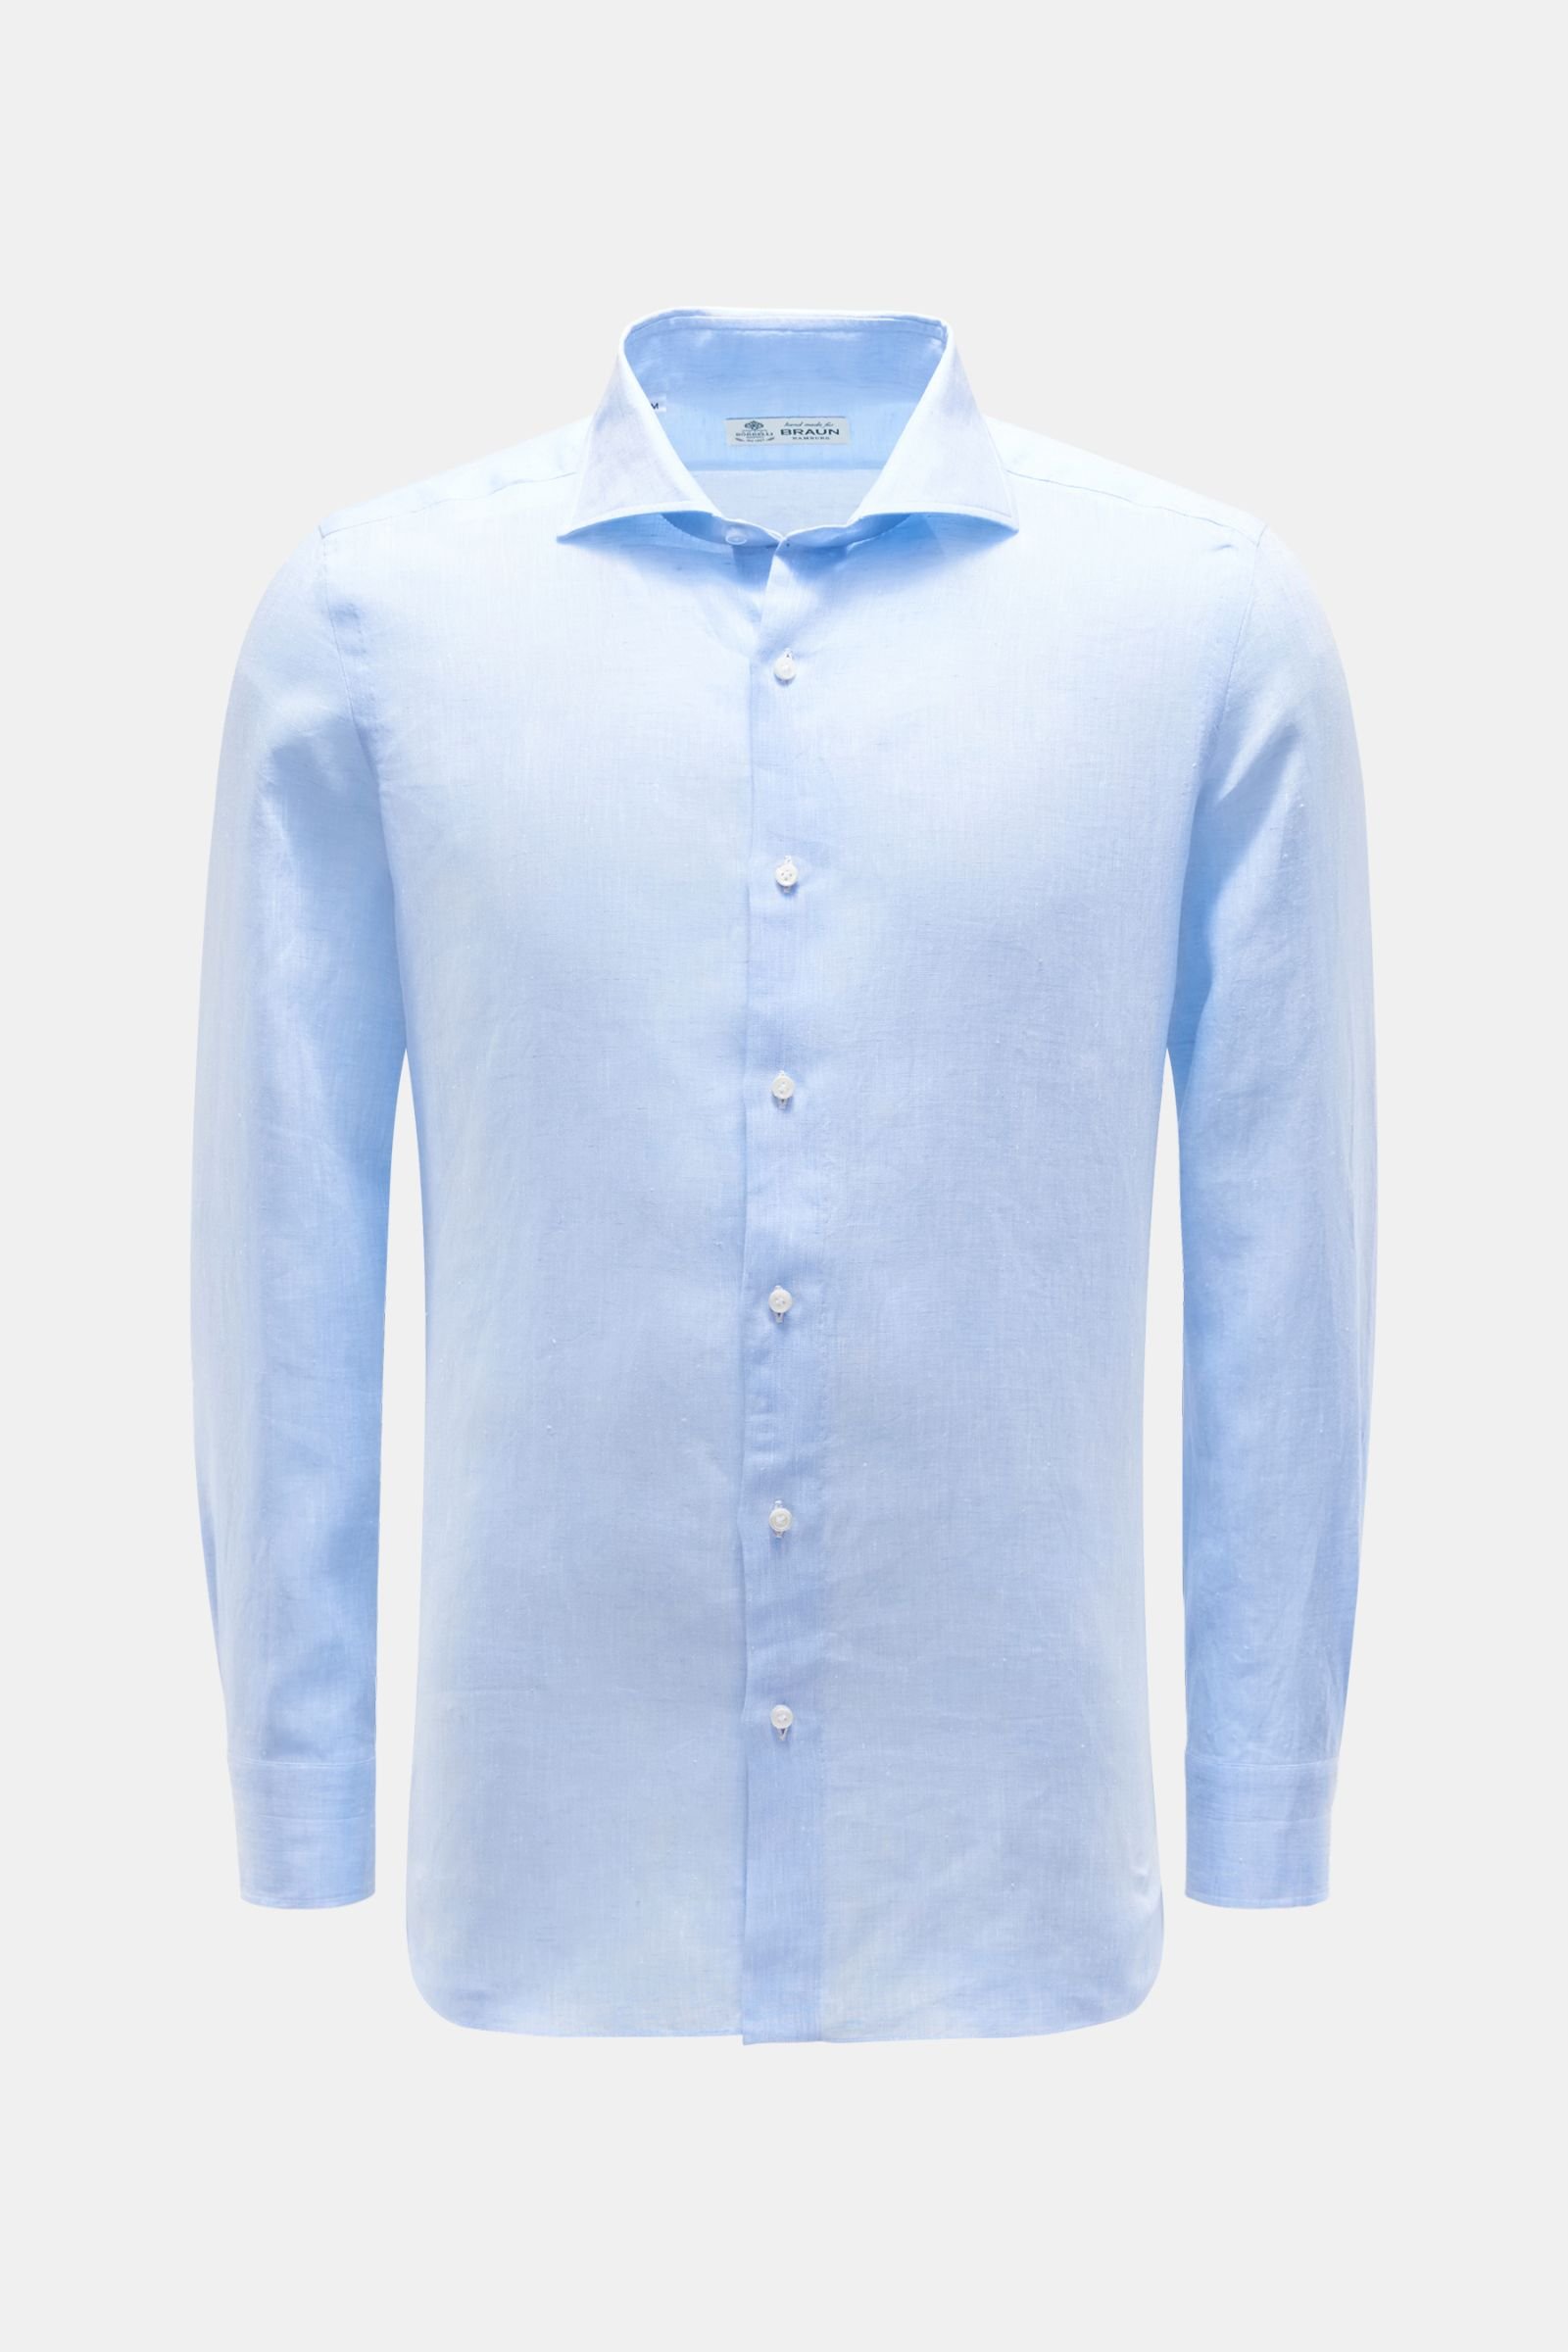 Linen shirt shark collar 'Nando' light blue